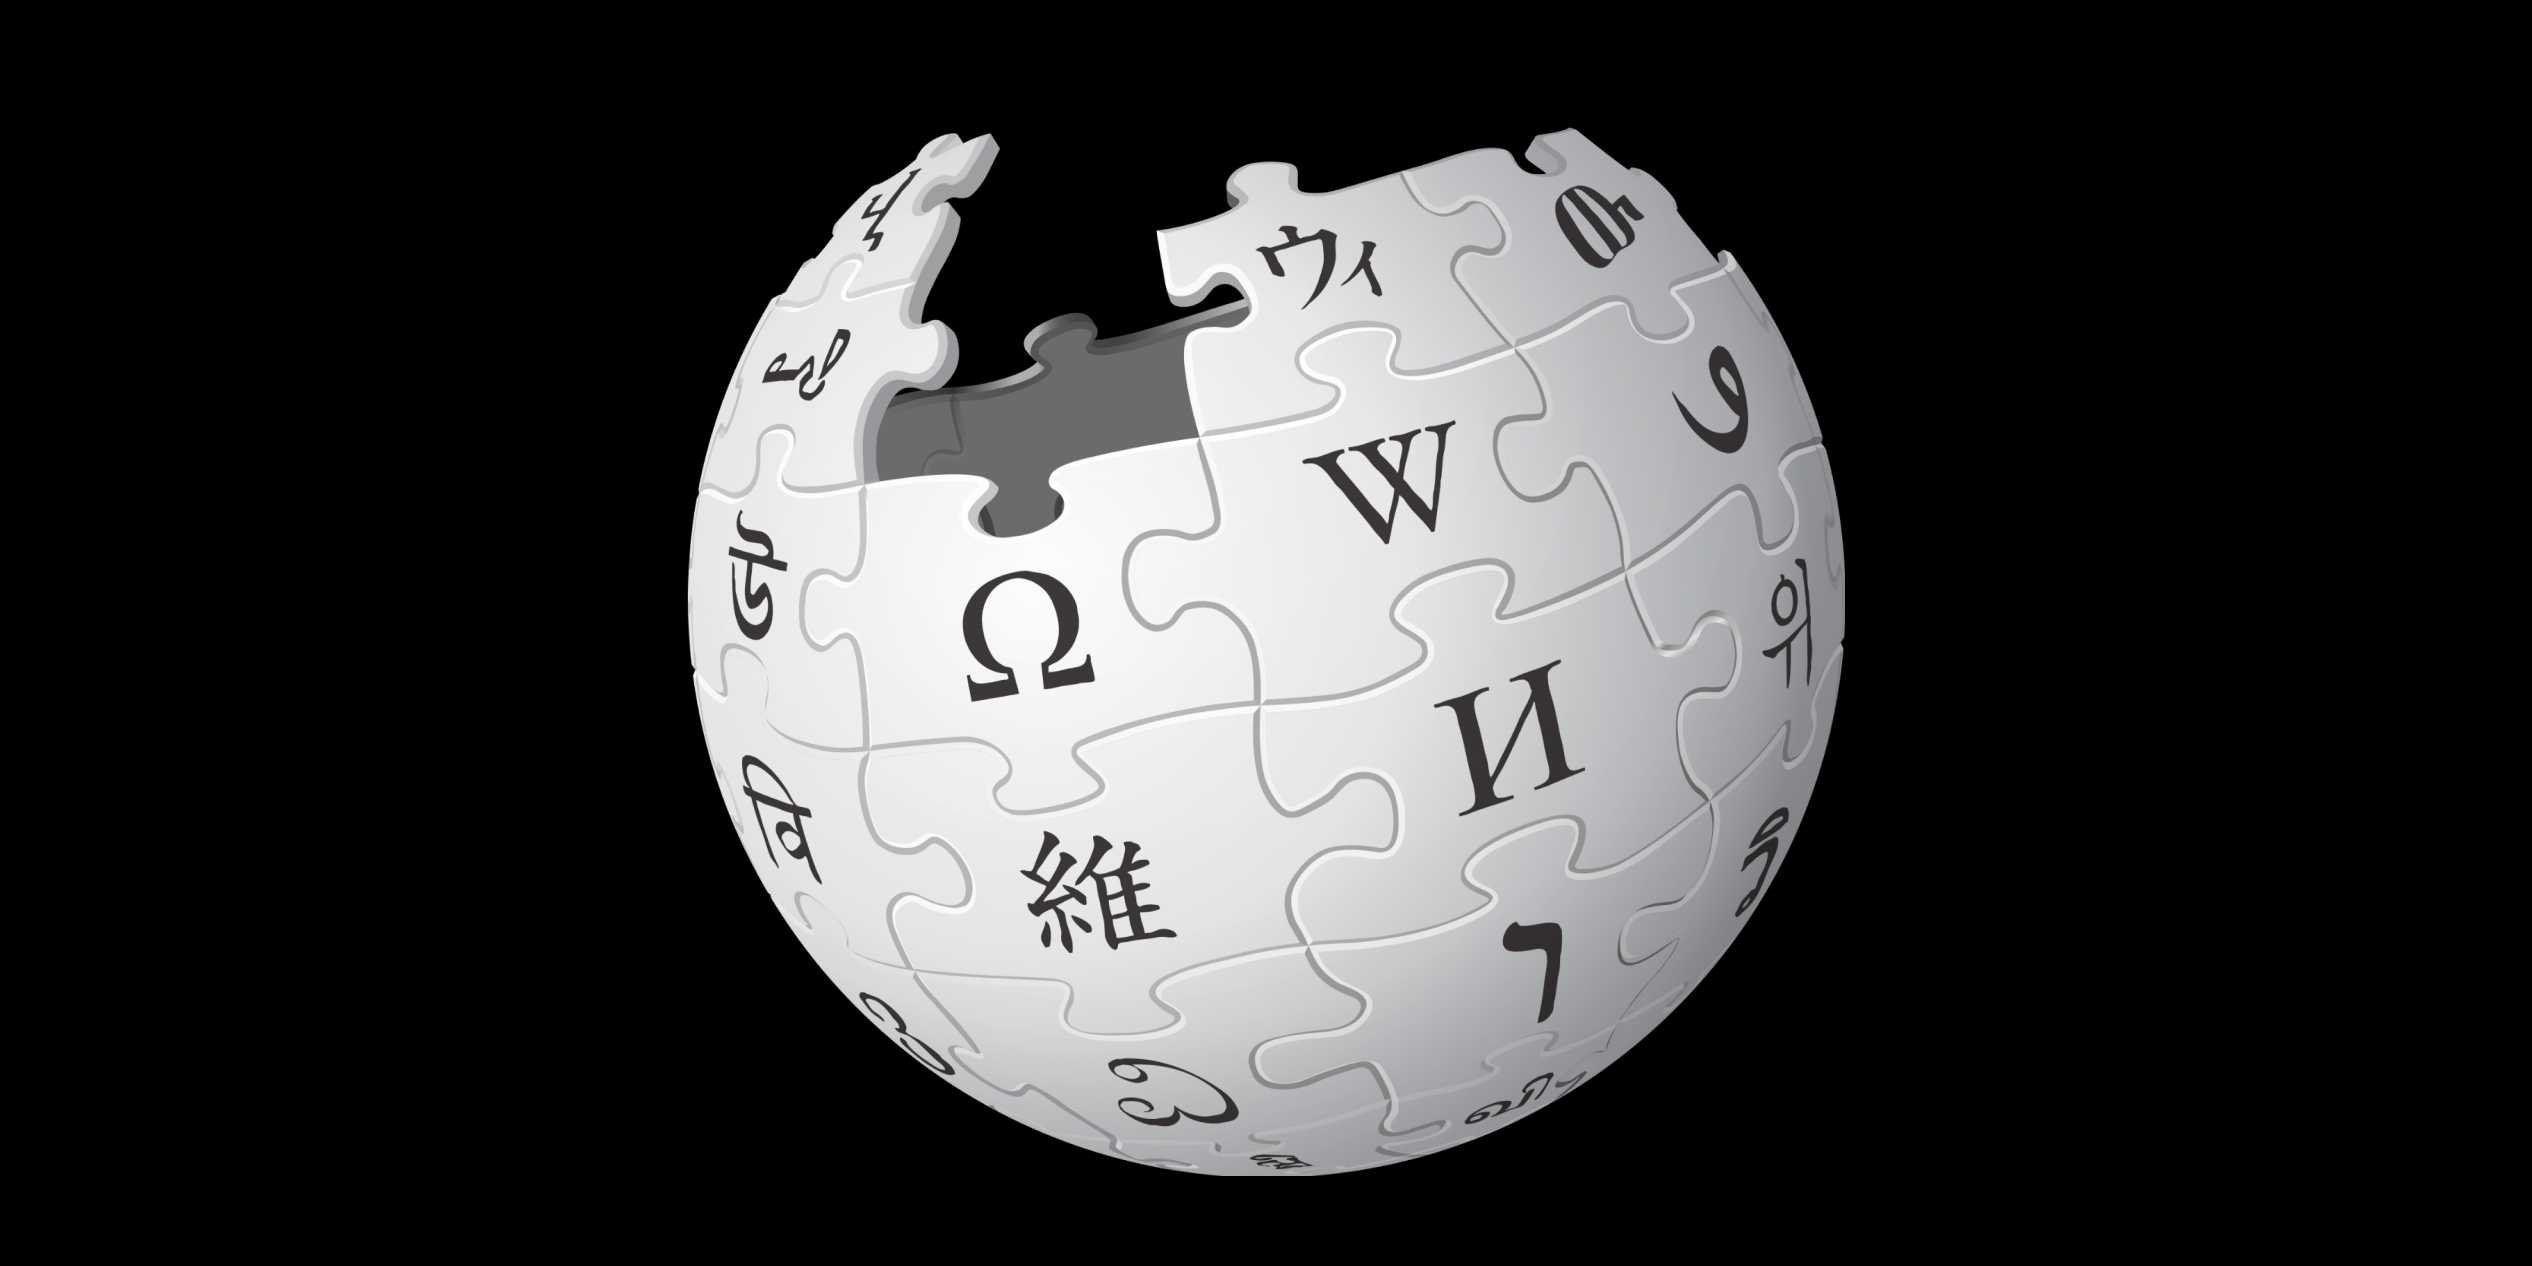 Википедия https ru wikipedia org. Википедия картинки. Википедия логотип. Изображение Википедия. Значок Википедии.